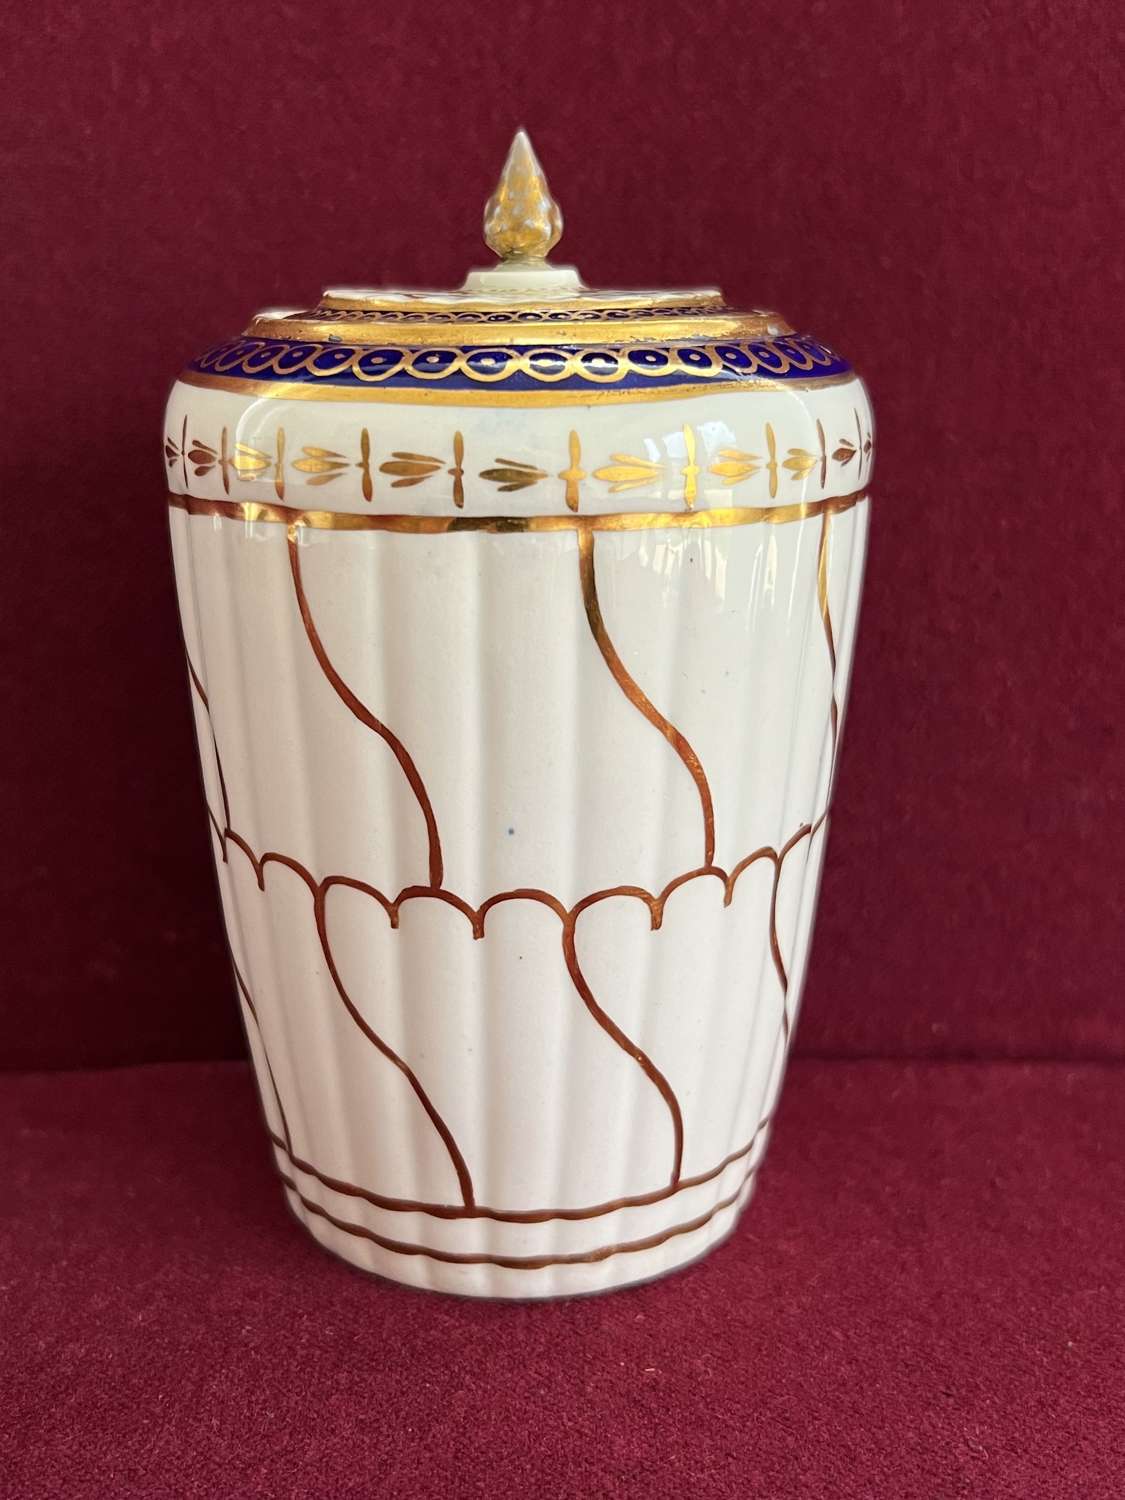 A Worcester Porcelain Tea Cannister c.1775 - 1785